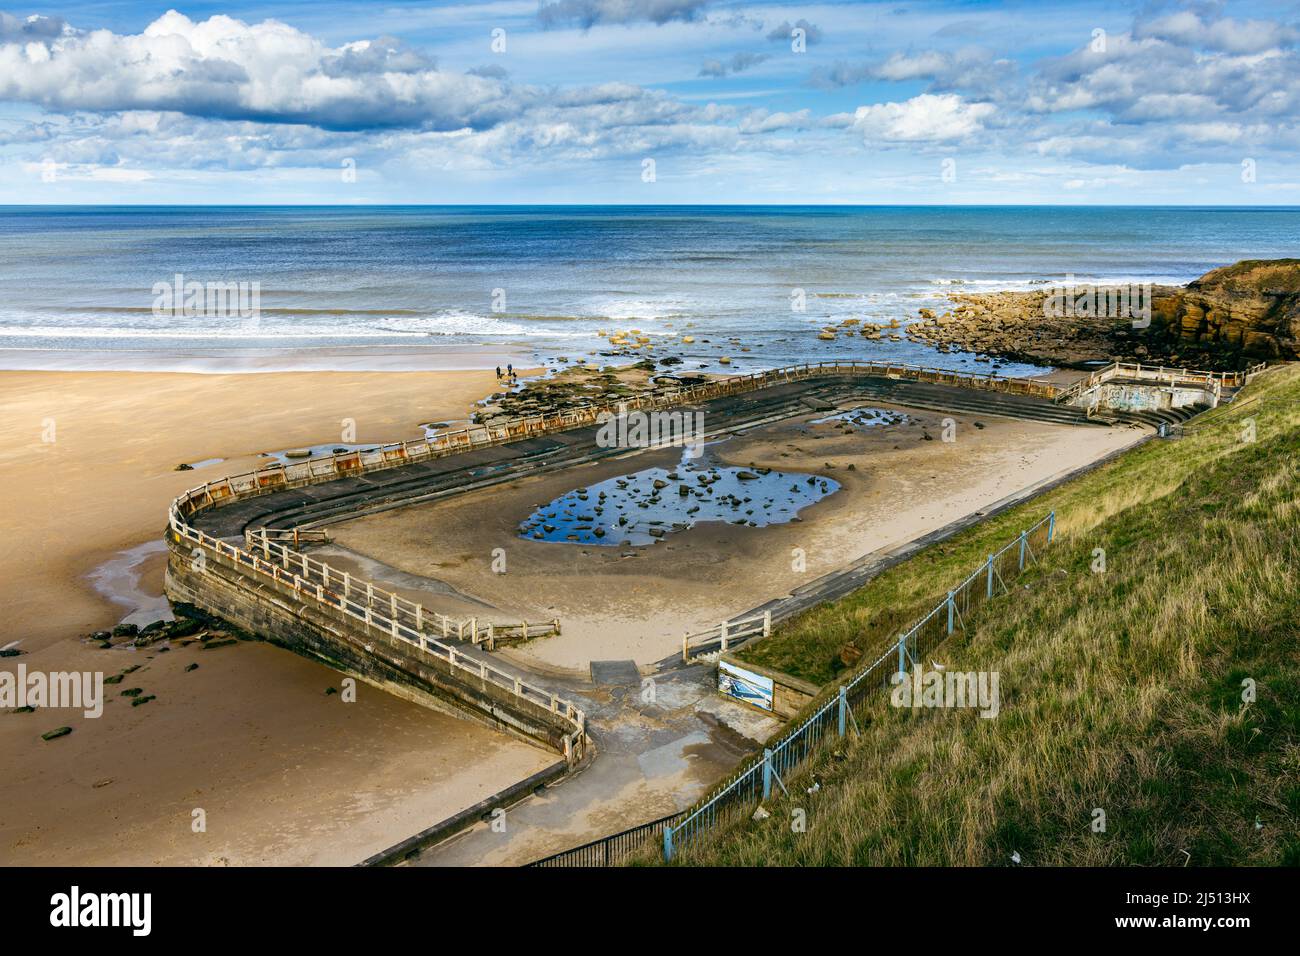 L'ancienne piscine à marée sur la plage de long Sands à Tynemouth, Tyne and Wear, Angleterre, Royaume-Uni Banque D'Images